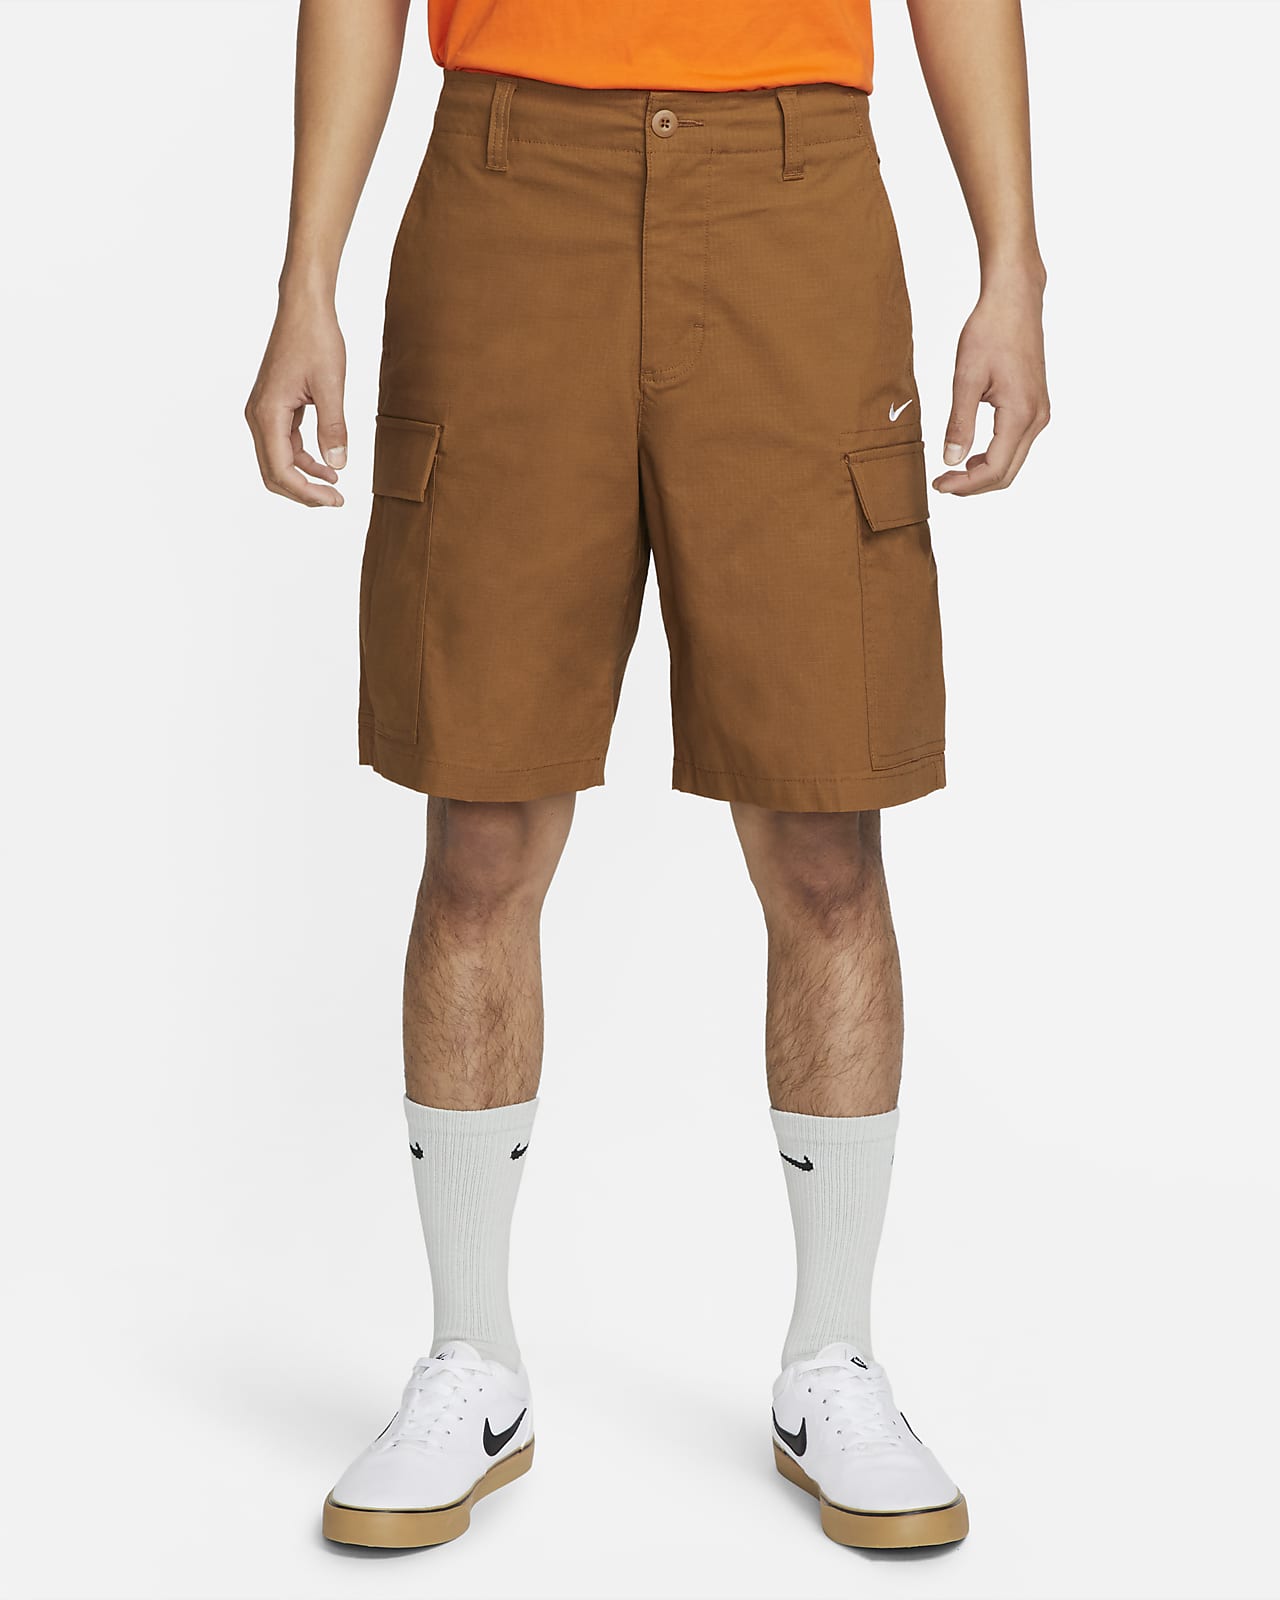 Brown short shorts